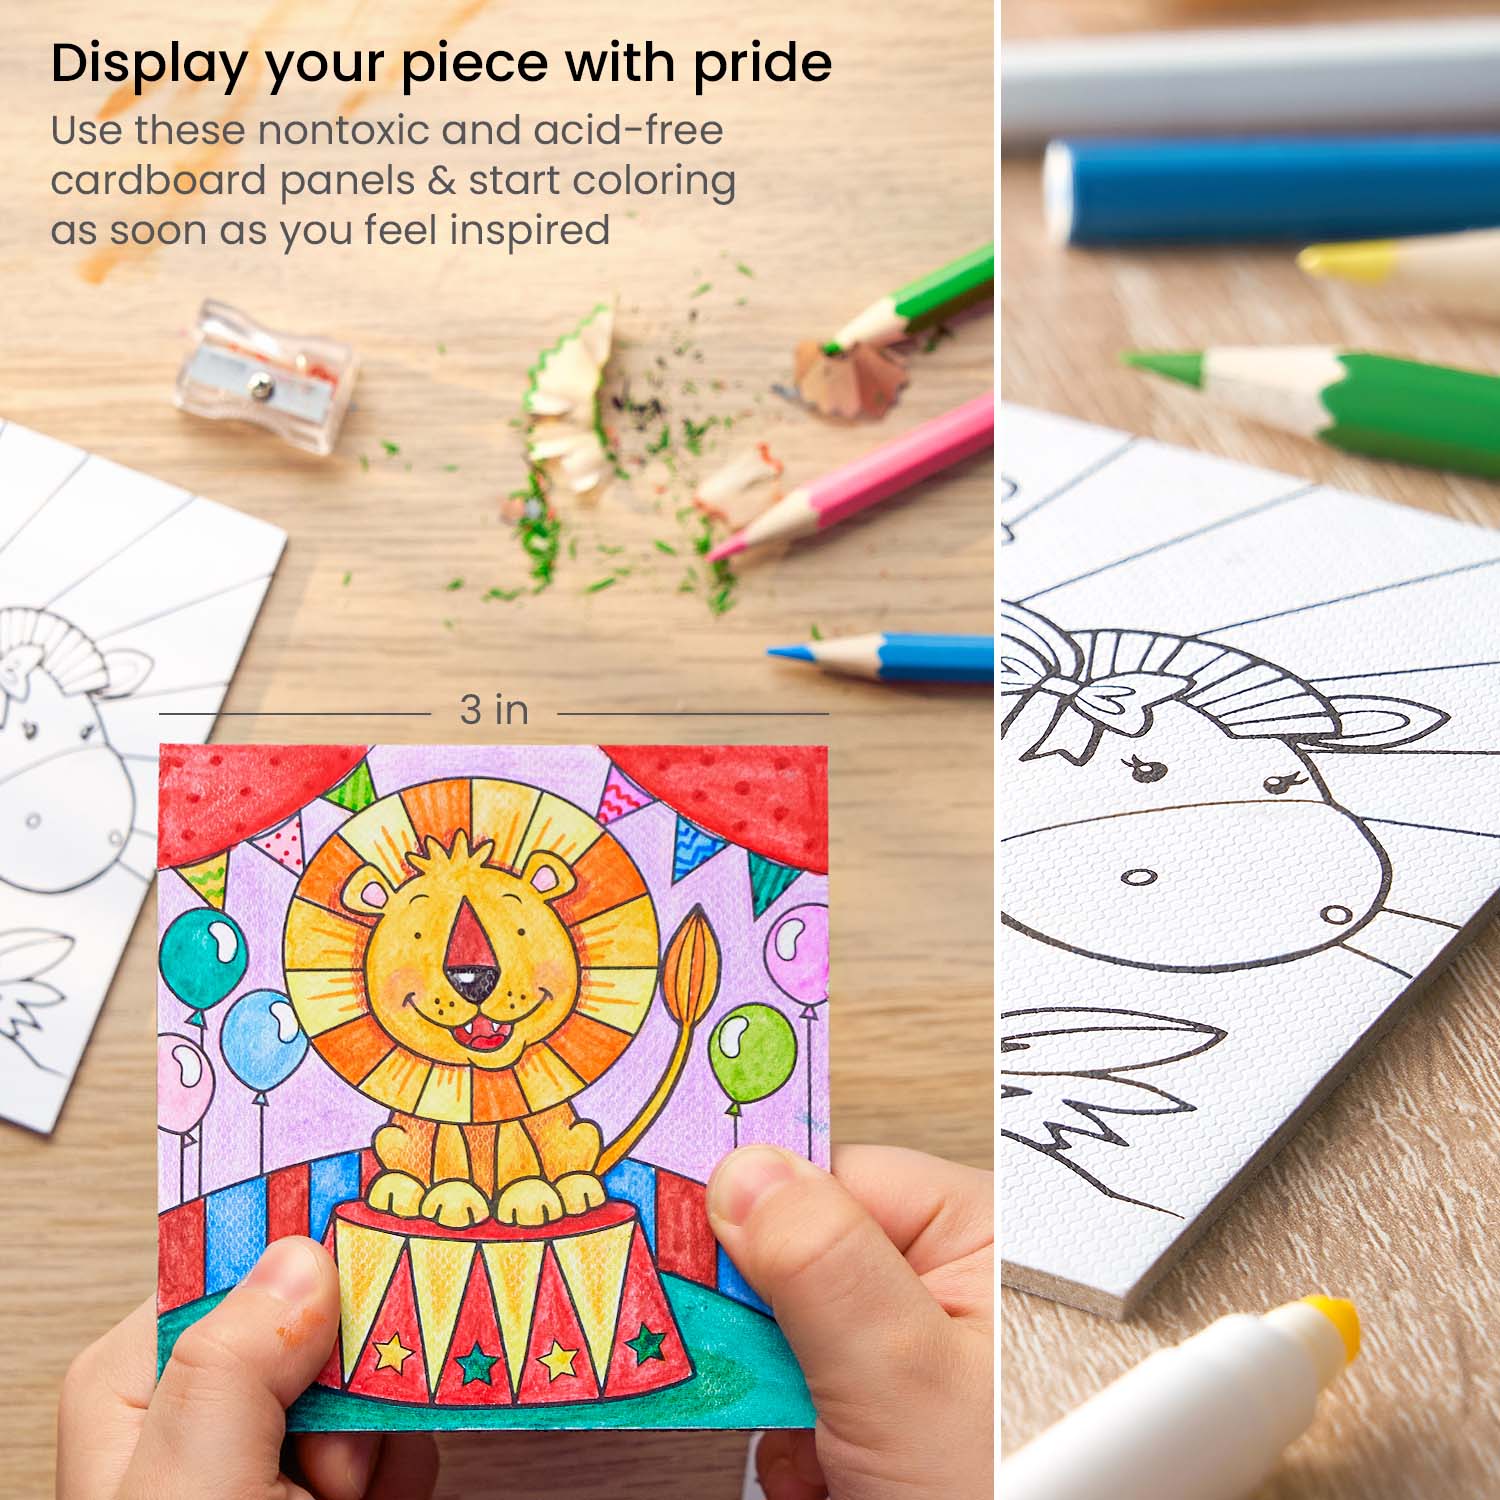  ColorCrayz Paint Set for Kids - 27 Piece Art Kit for